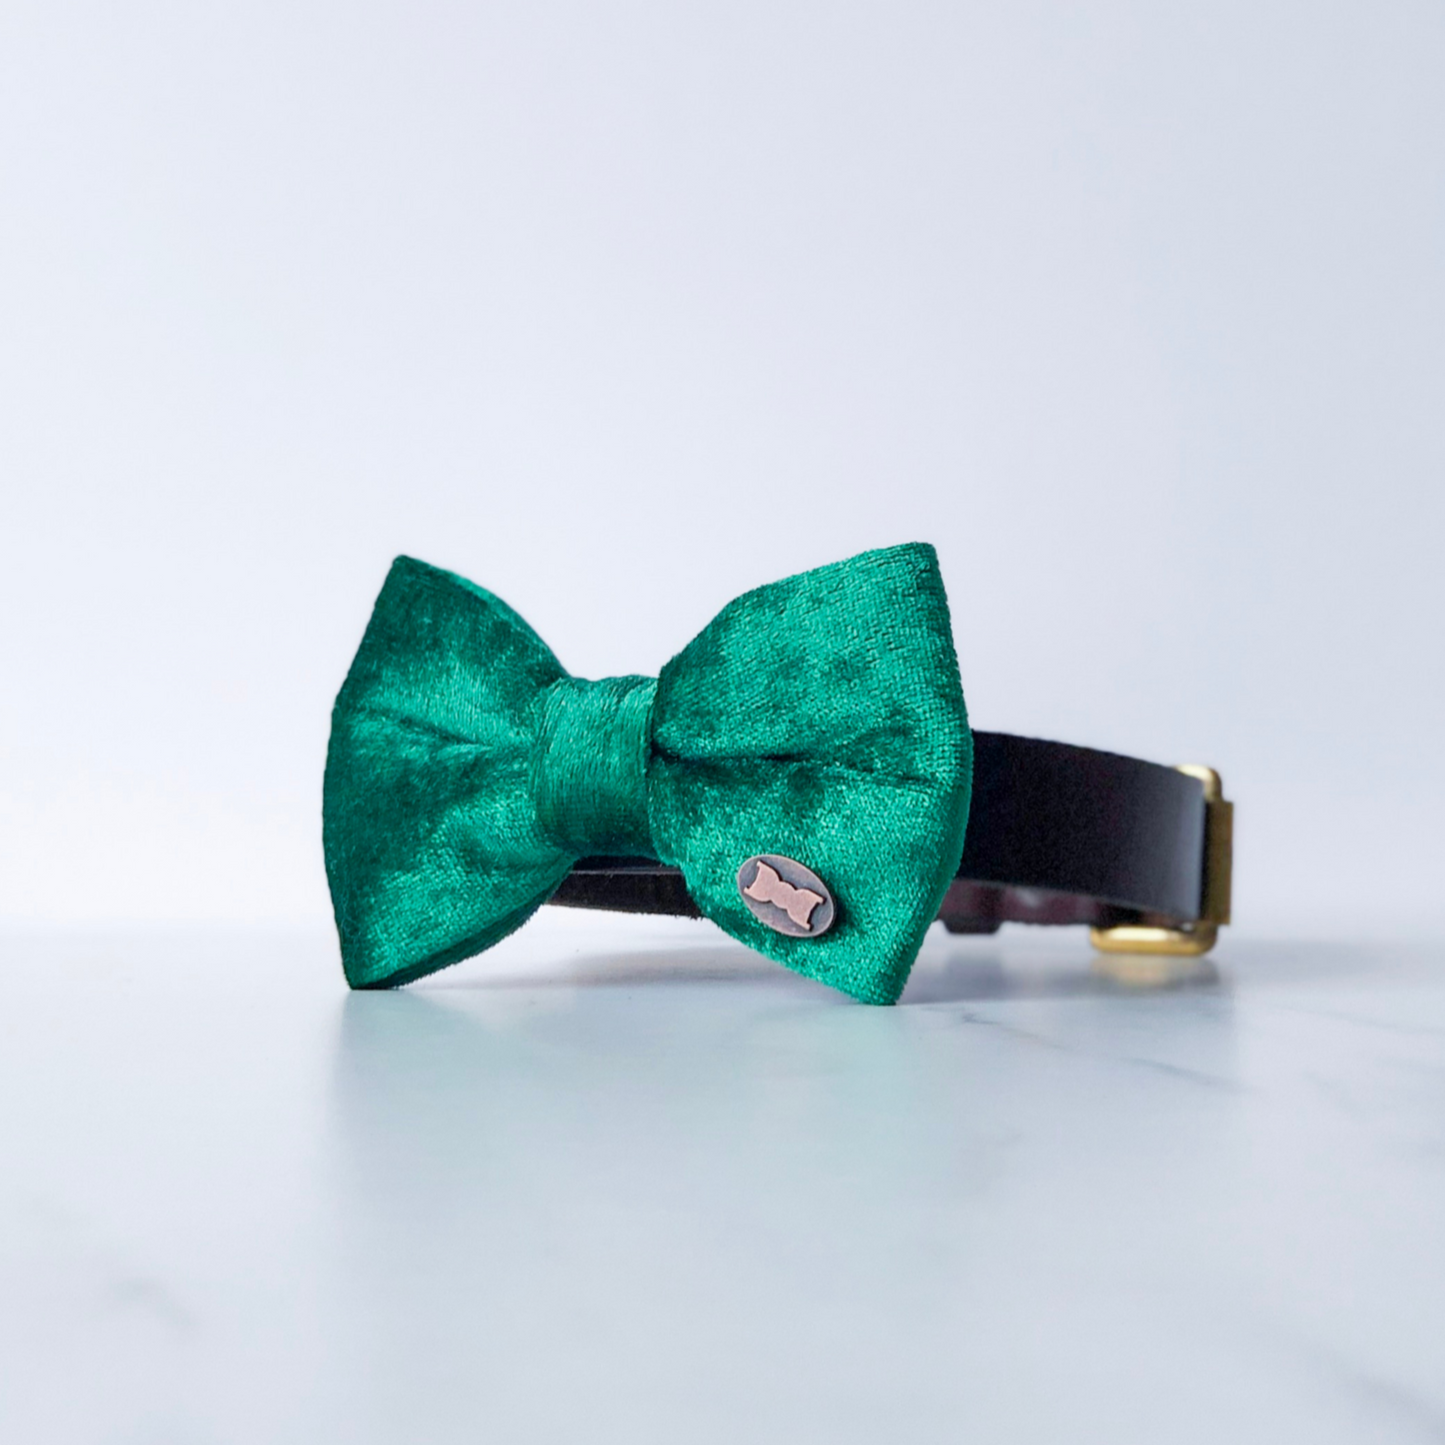 Green velvet bow tie in small